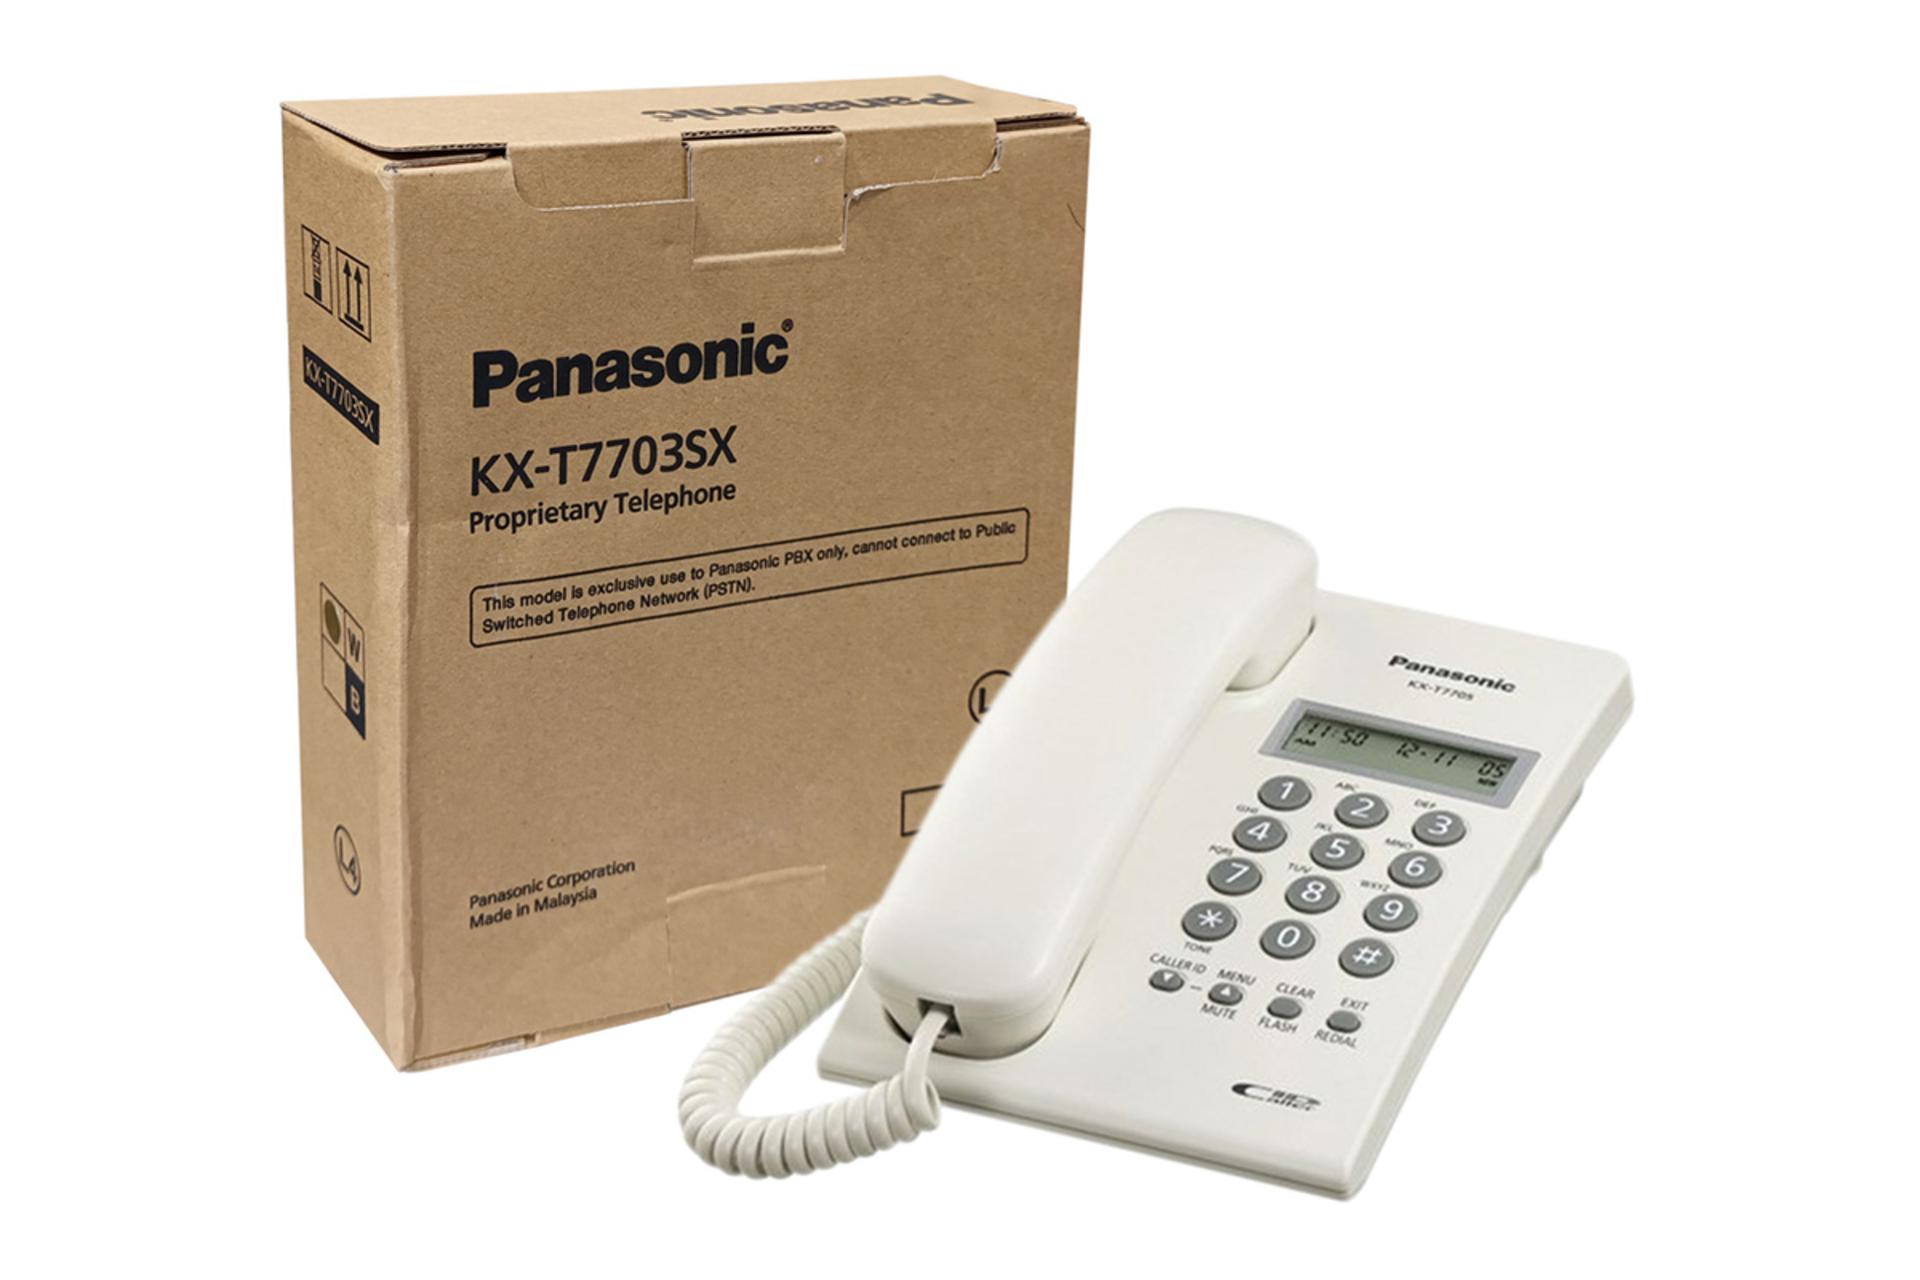 تلفن پاناسونیک KX-T7703SX جعبه